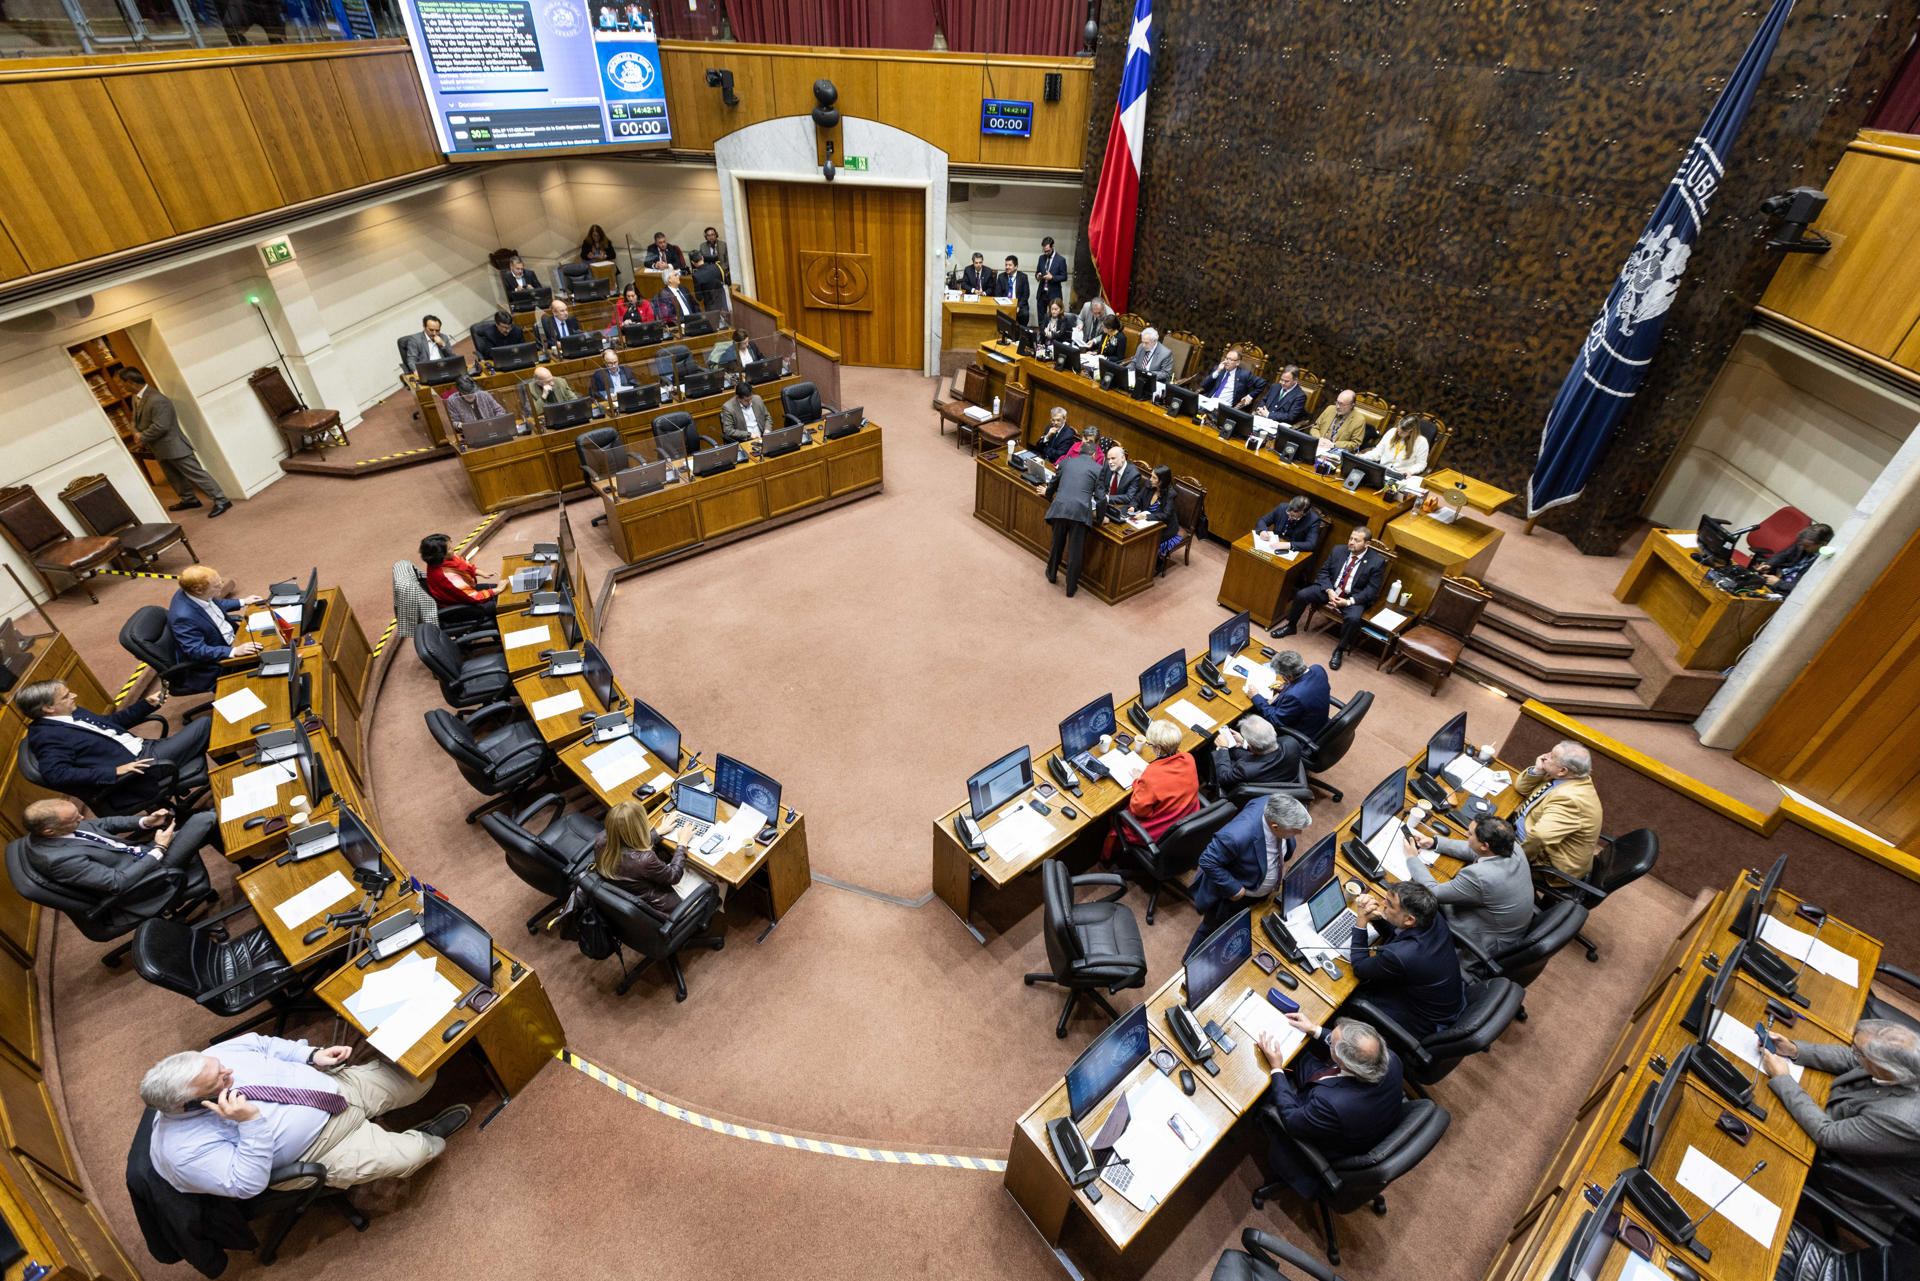 Fotografía cedida por Prensa del Senado durante la discusión del proyecto de Ley Corta de Isapres, este lunes en Valparaíso (Chile). EFE/ Prensa Senado